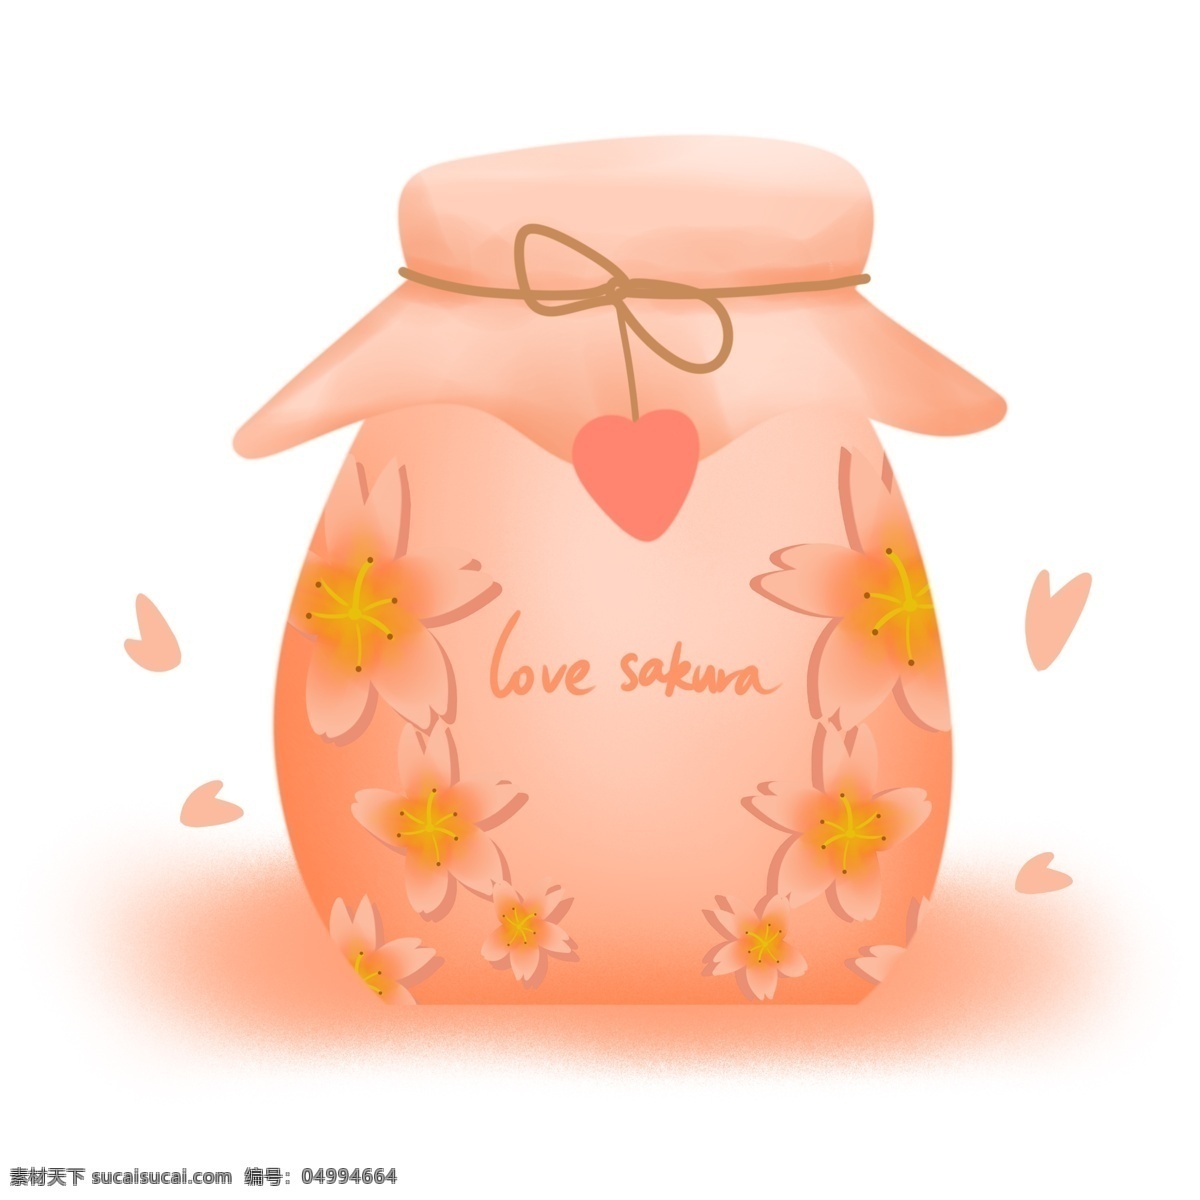 樱花 季 周边 酒 装饰 日式 樱花季 樱花酒 管子 花瓣 粉色 柔色 可爱 温柔 日本